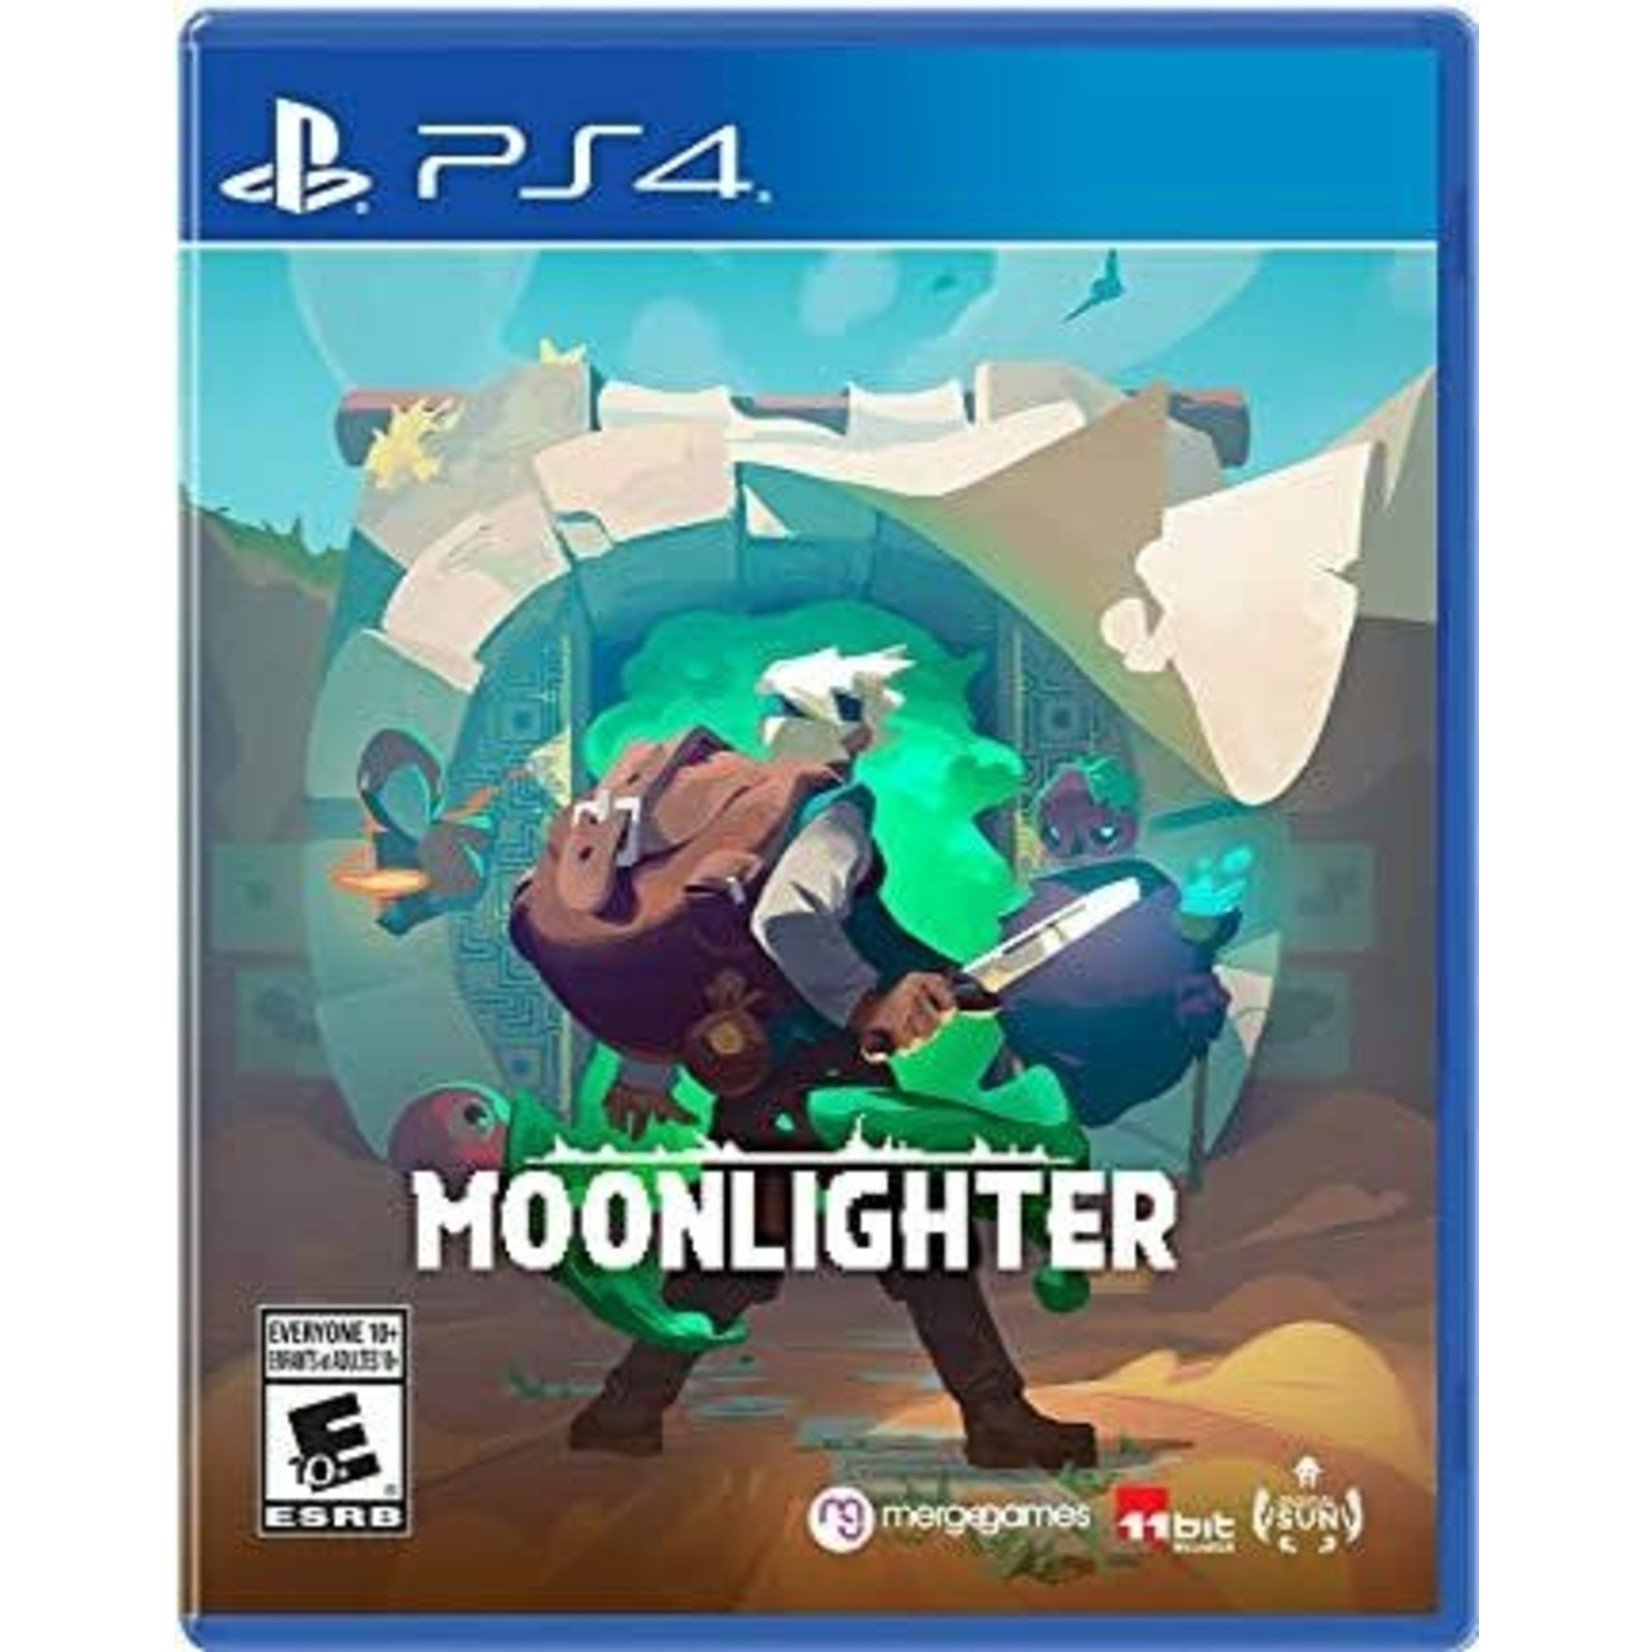 PS4-Moonlighter